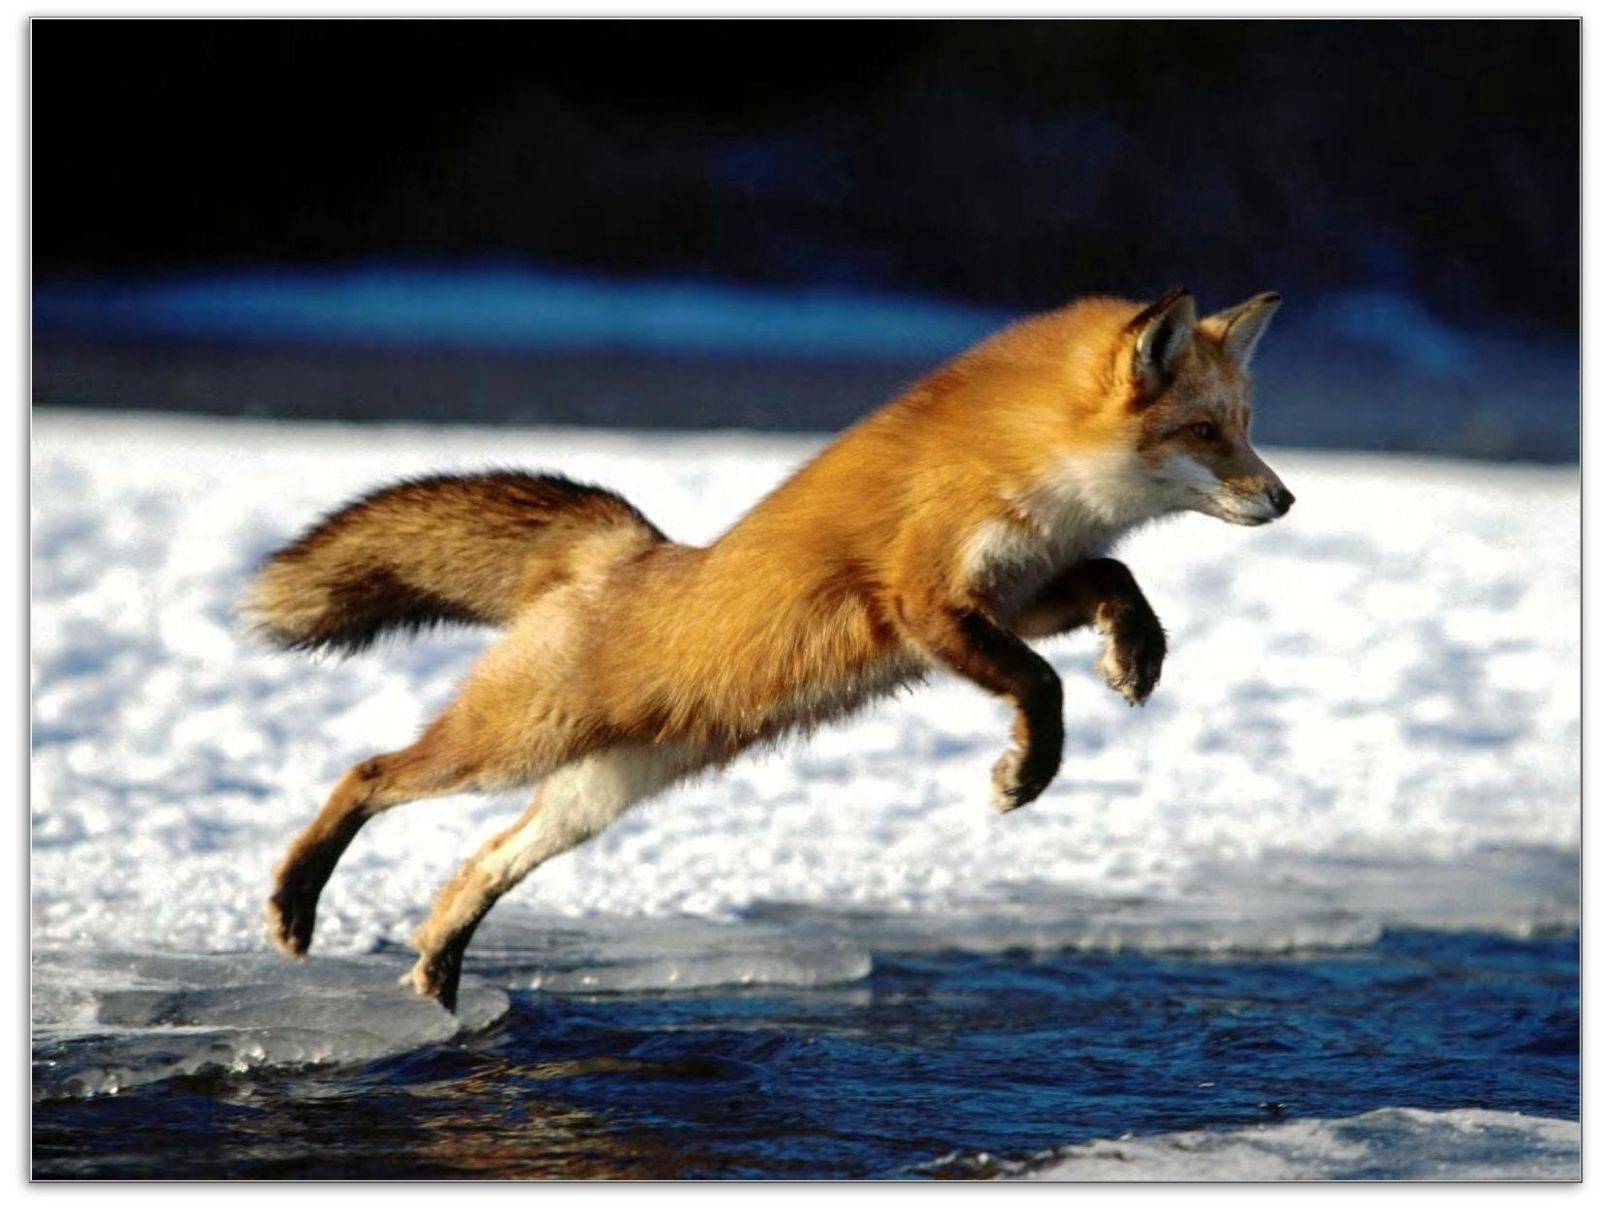 Tpof fox. Обыкновенная лисица (рыжая лисица). Лиса в прыжке. Лиса бежит. Животные в движении.